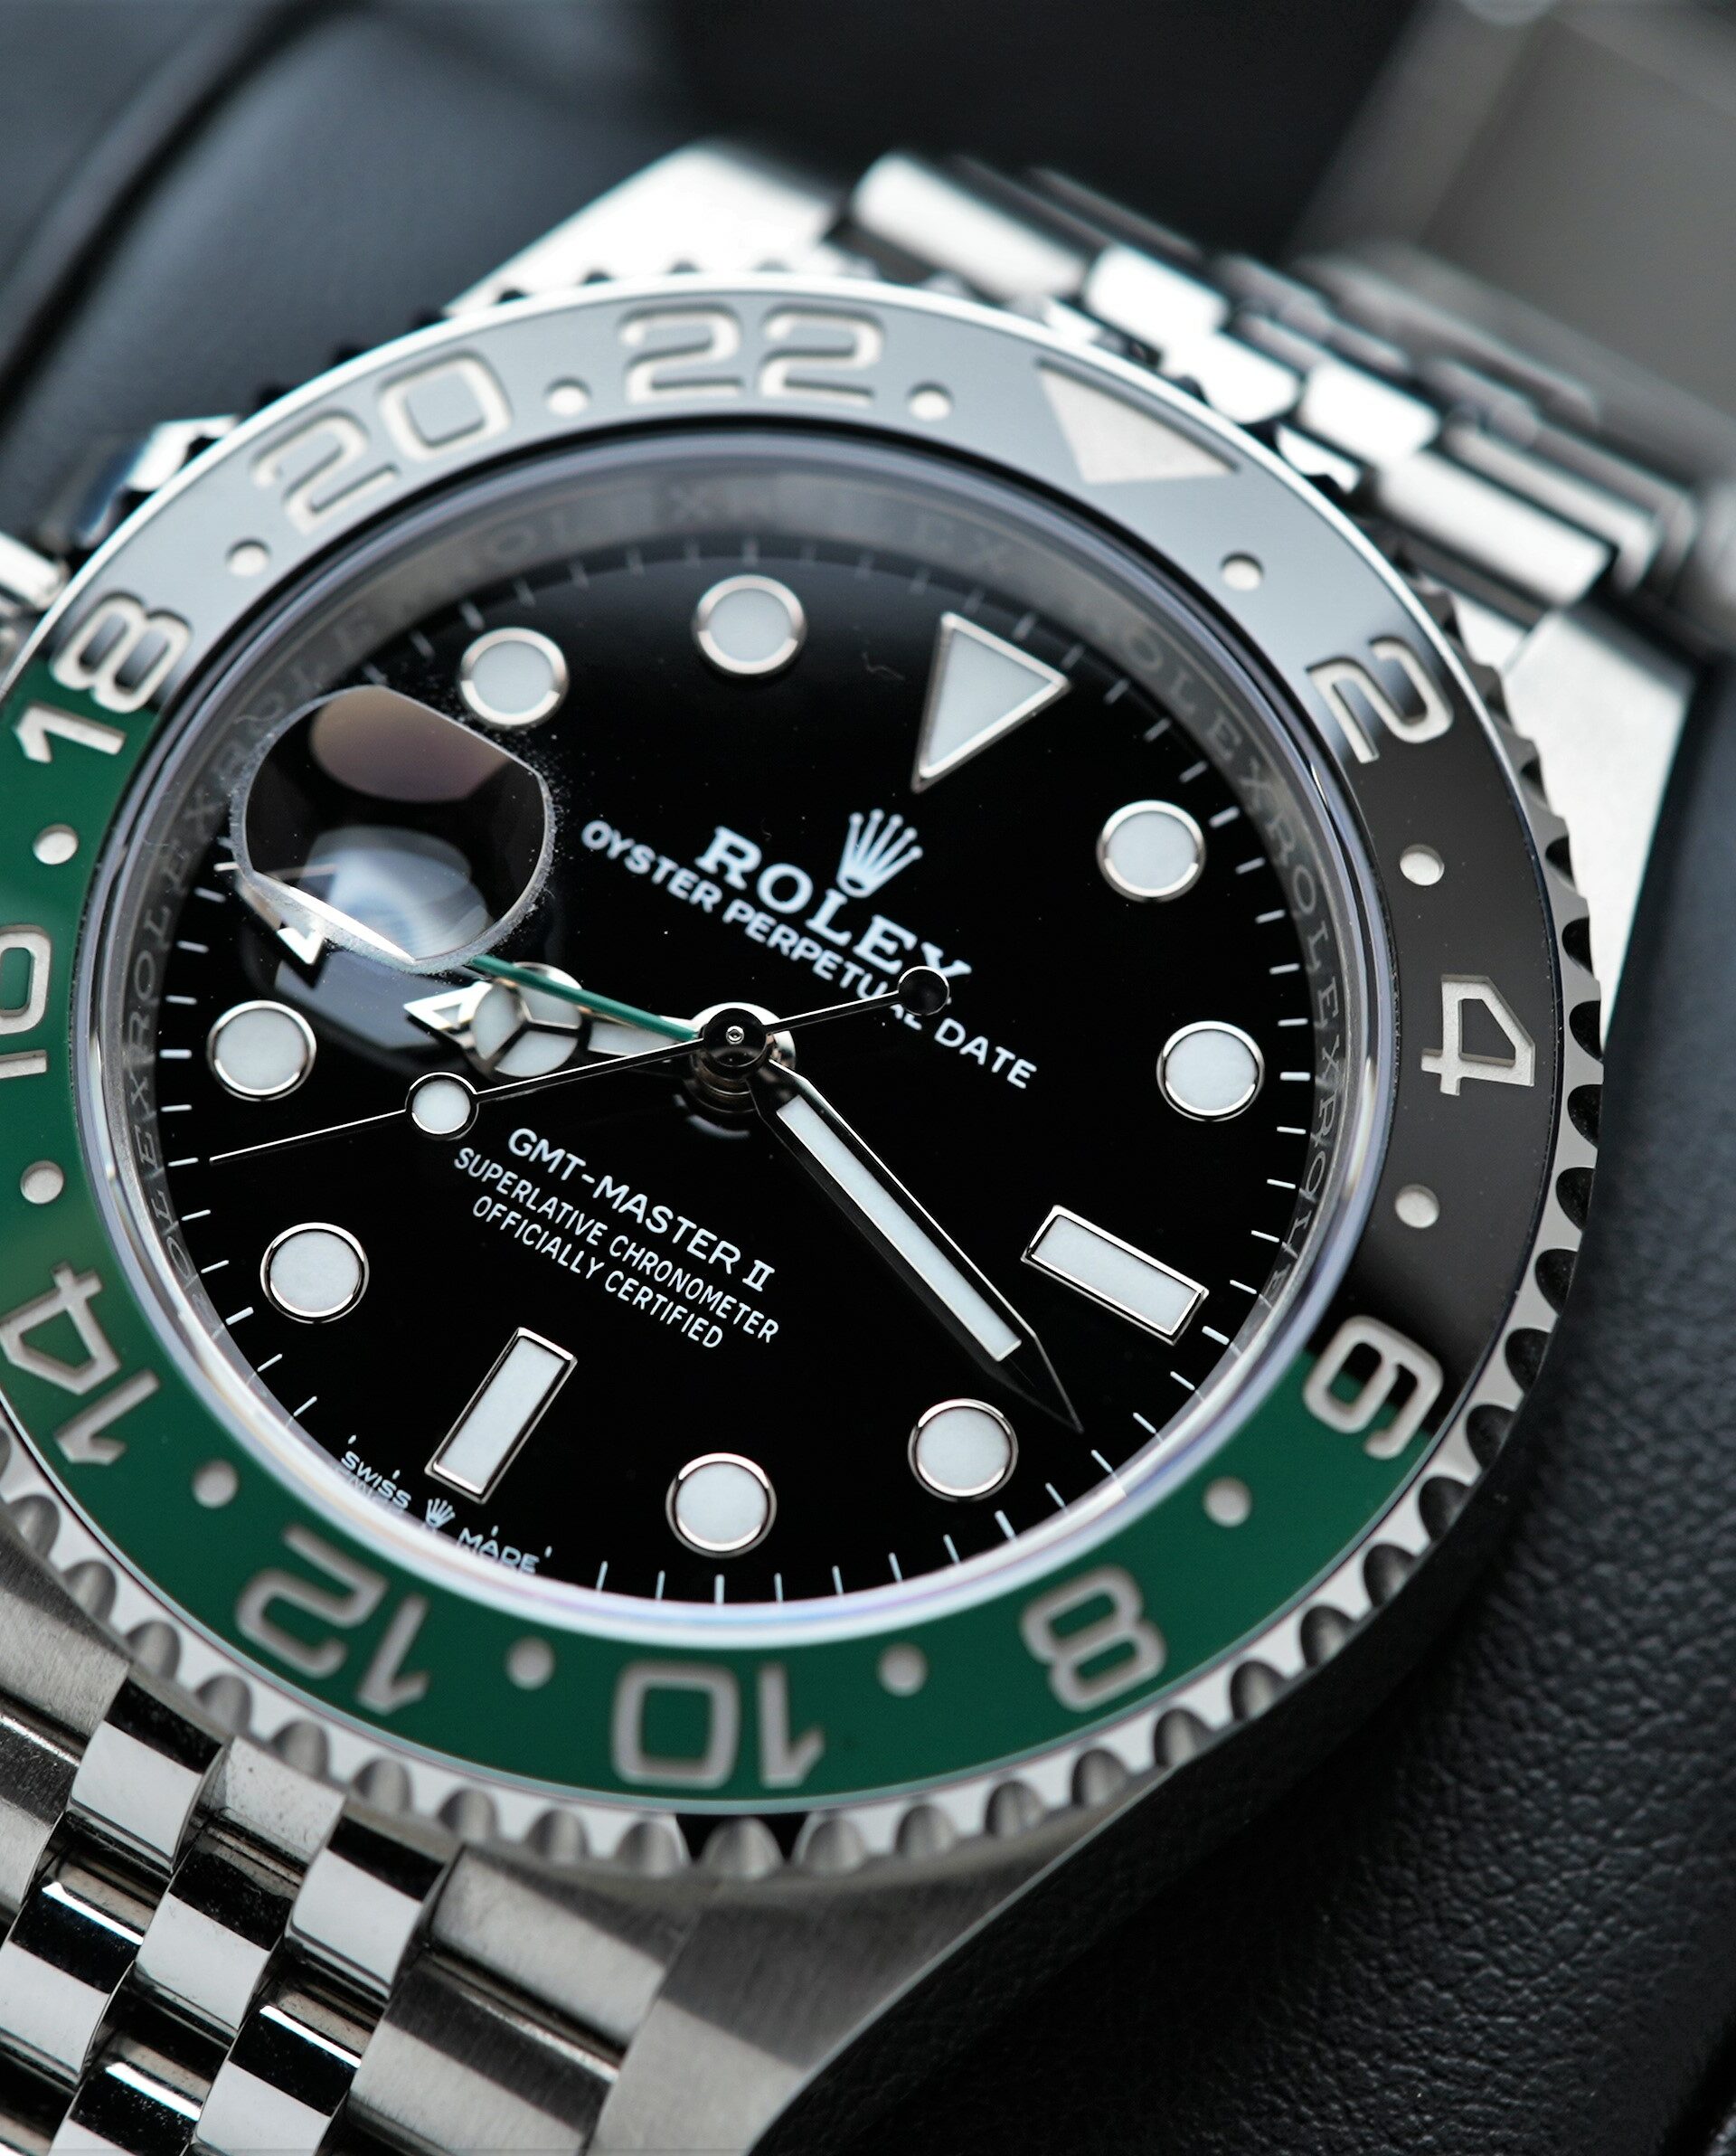 Rolex GMT-Master II 126720VTNR wristwatch on a black cushion under white light.